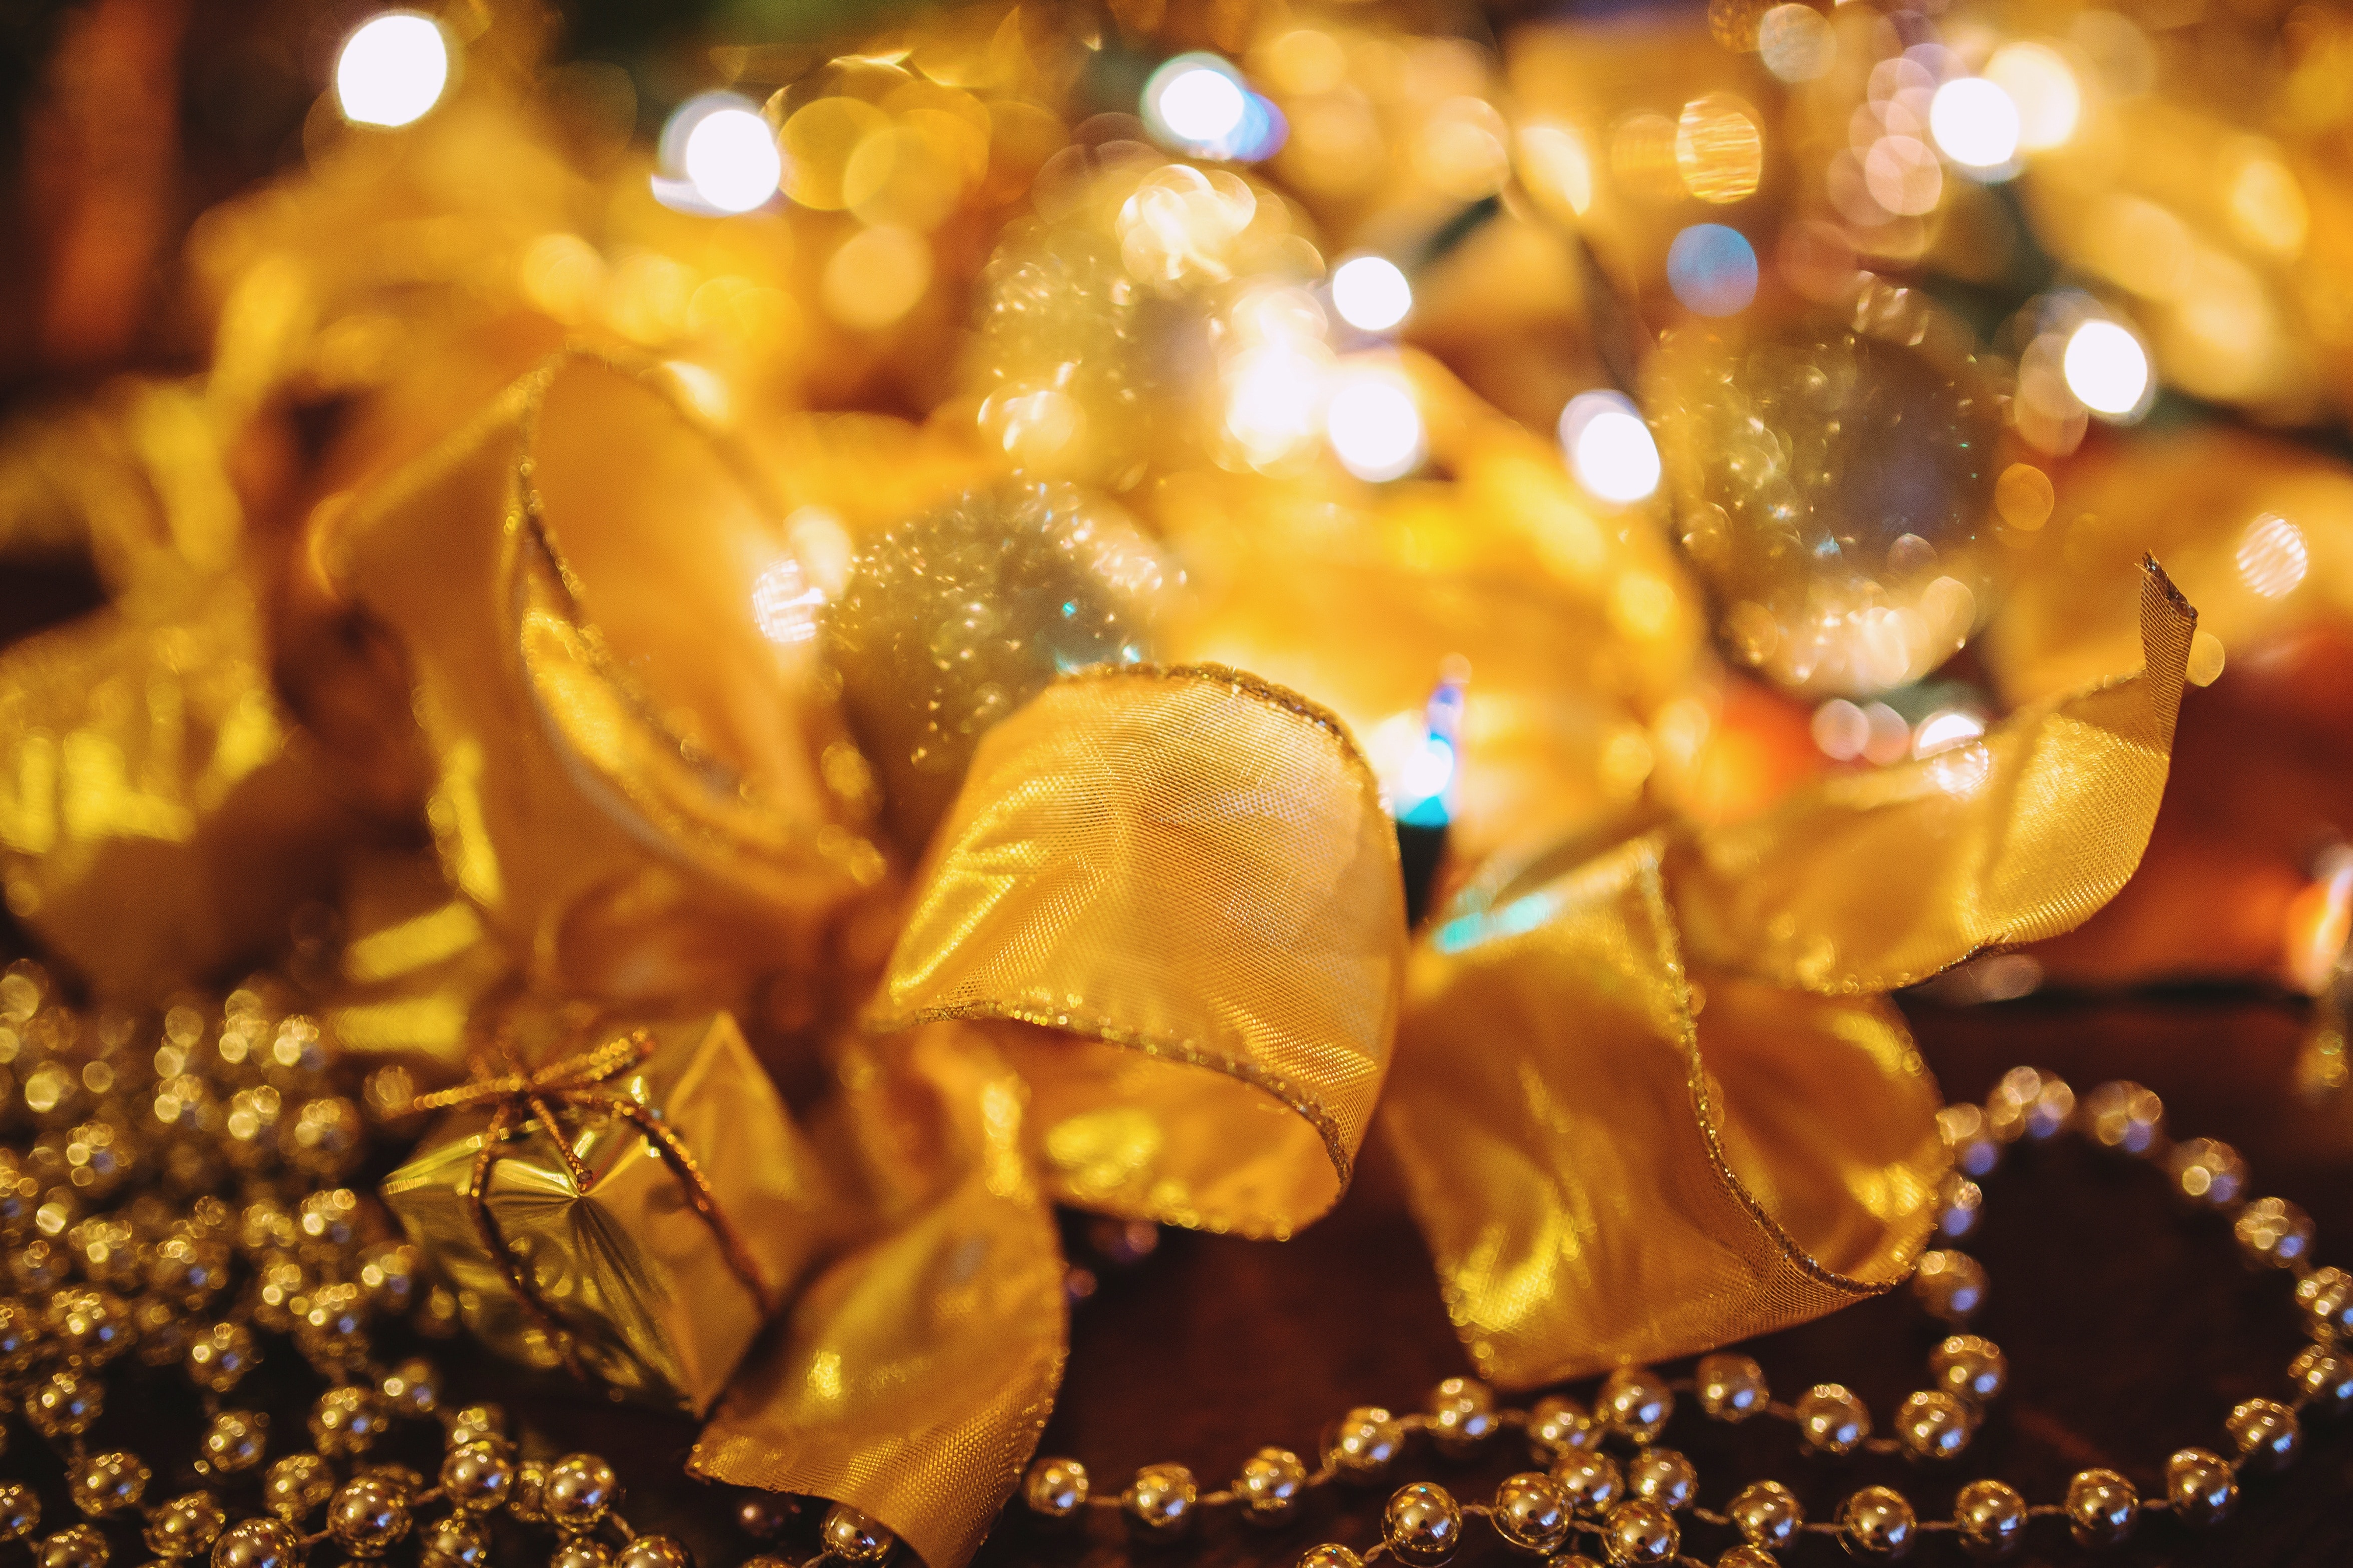 Decoration, Decor, Christmas, Xmas, Gold, illuminated, celebration